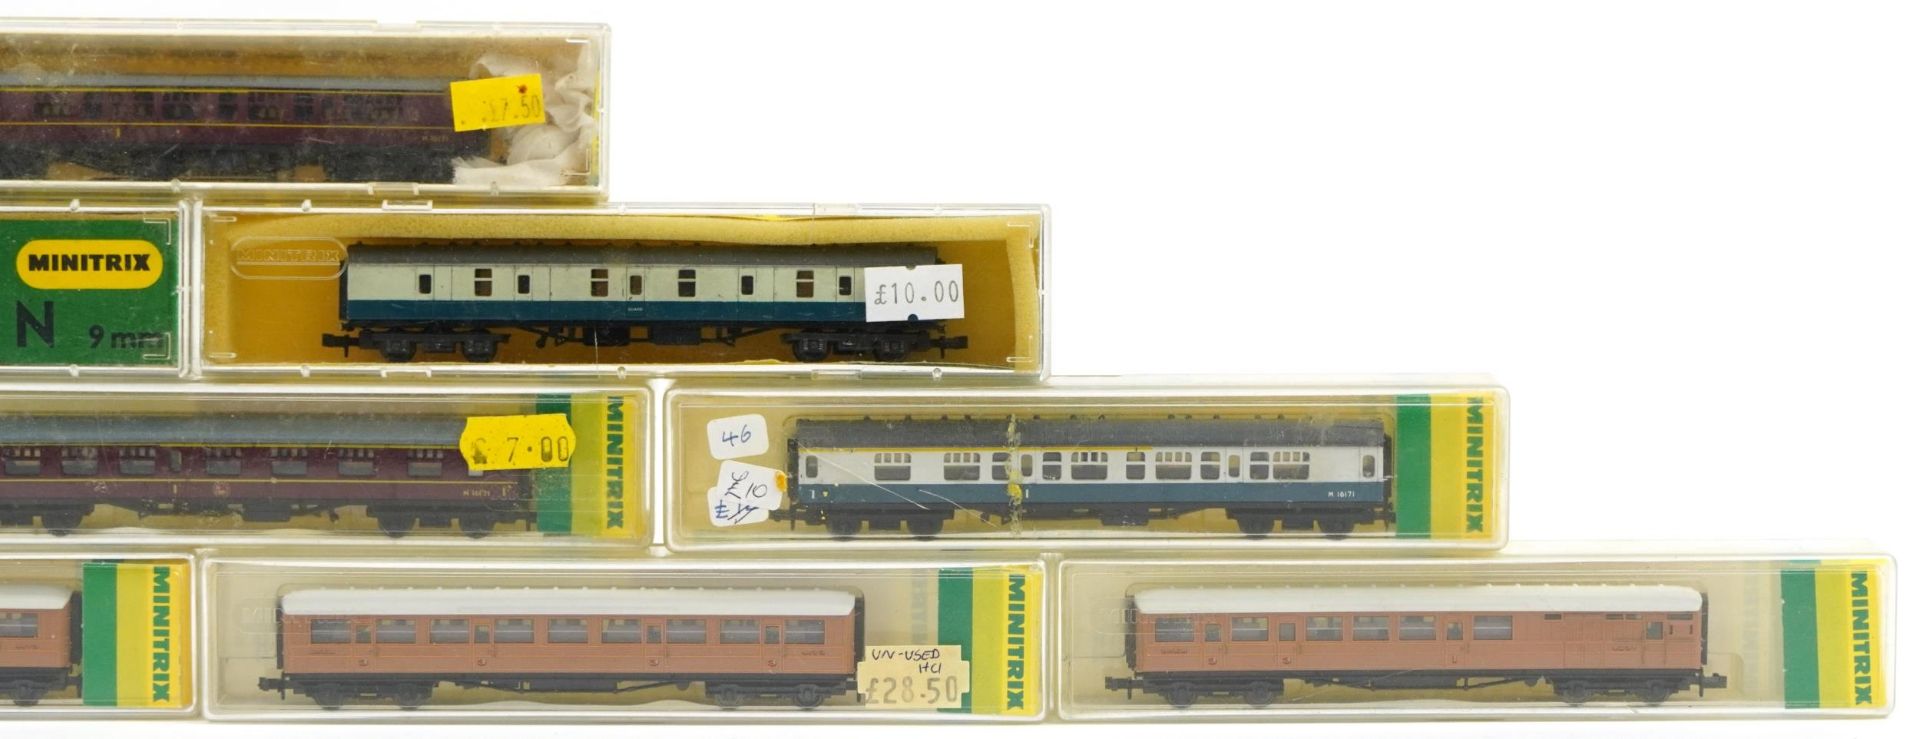 Ten Minitrix N gauge model railway carriages with cases, numbers 2926, 2938, 3112, 13003, 13008, - Bild 4 aus 5